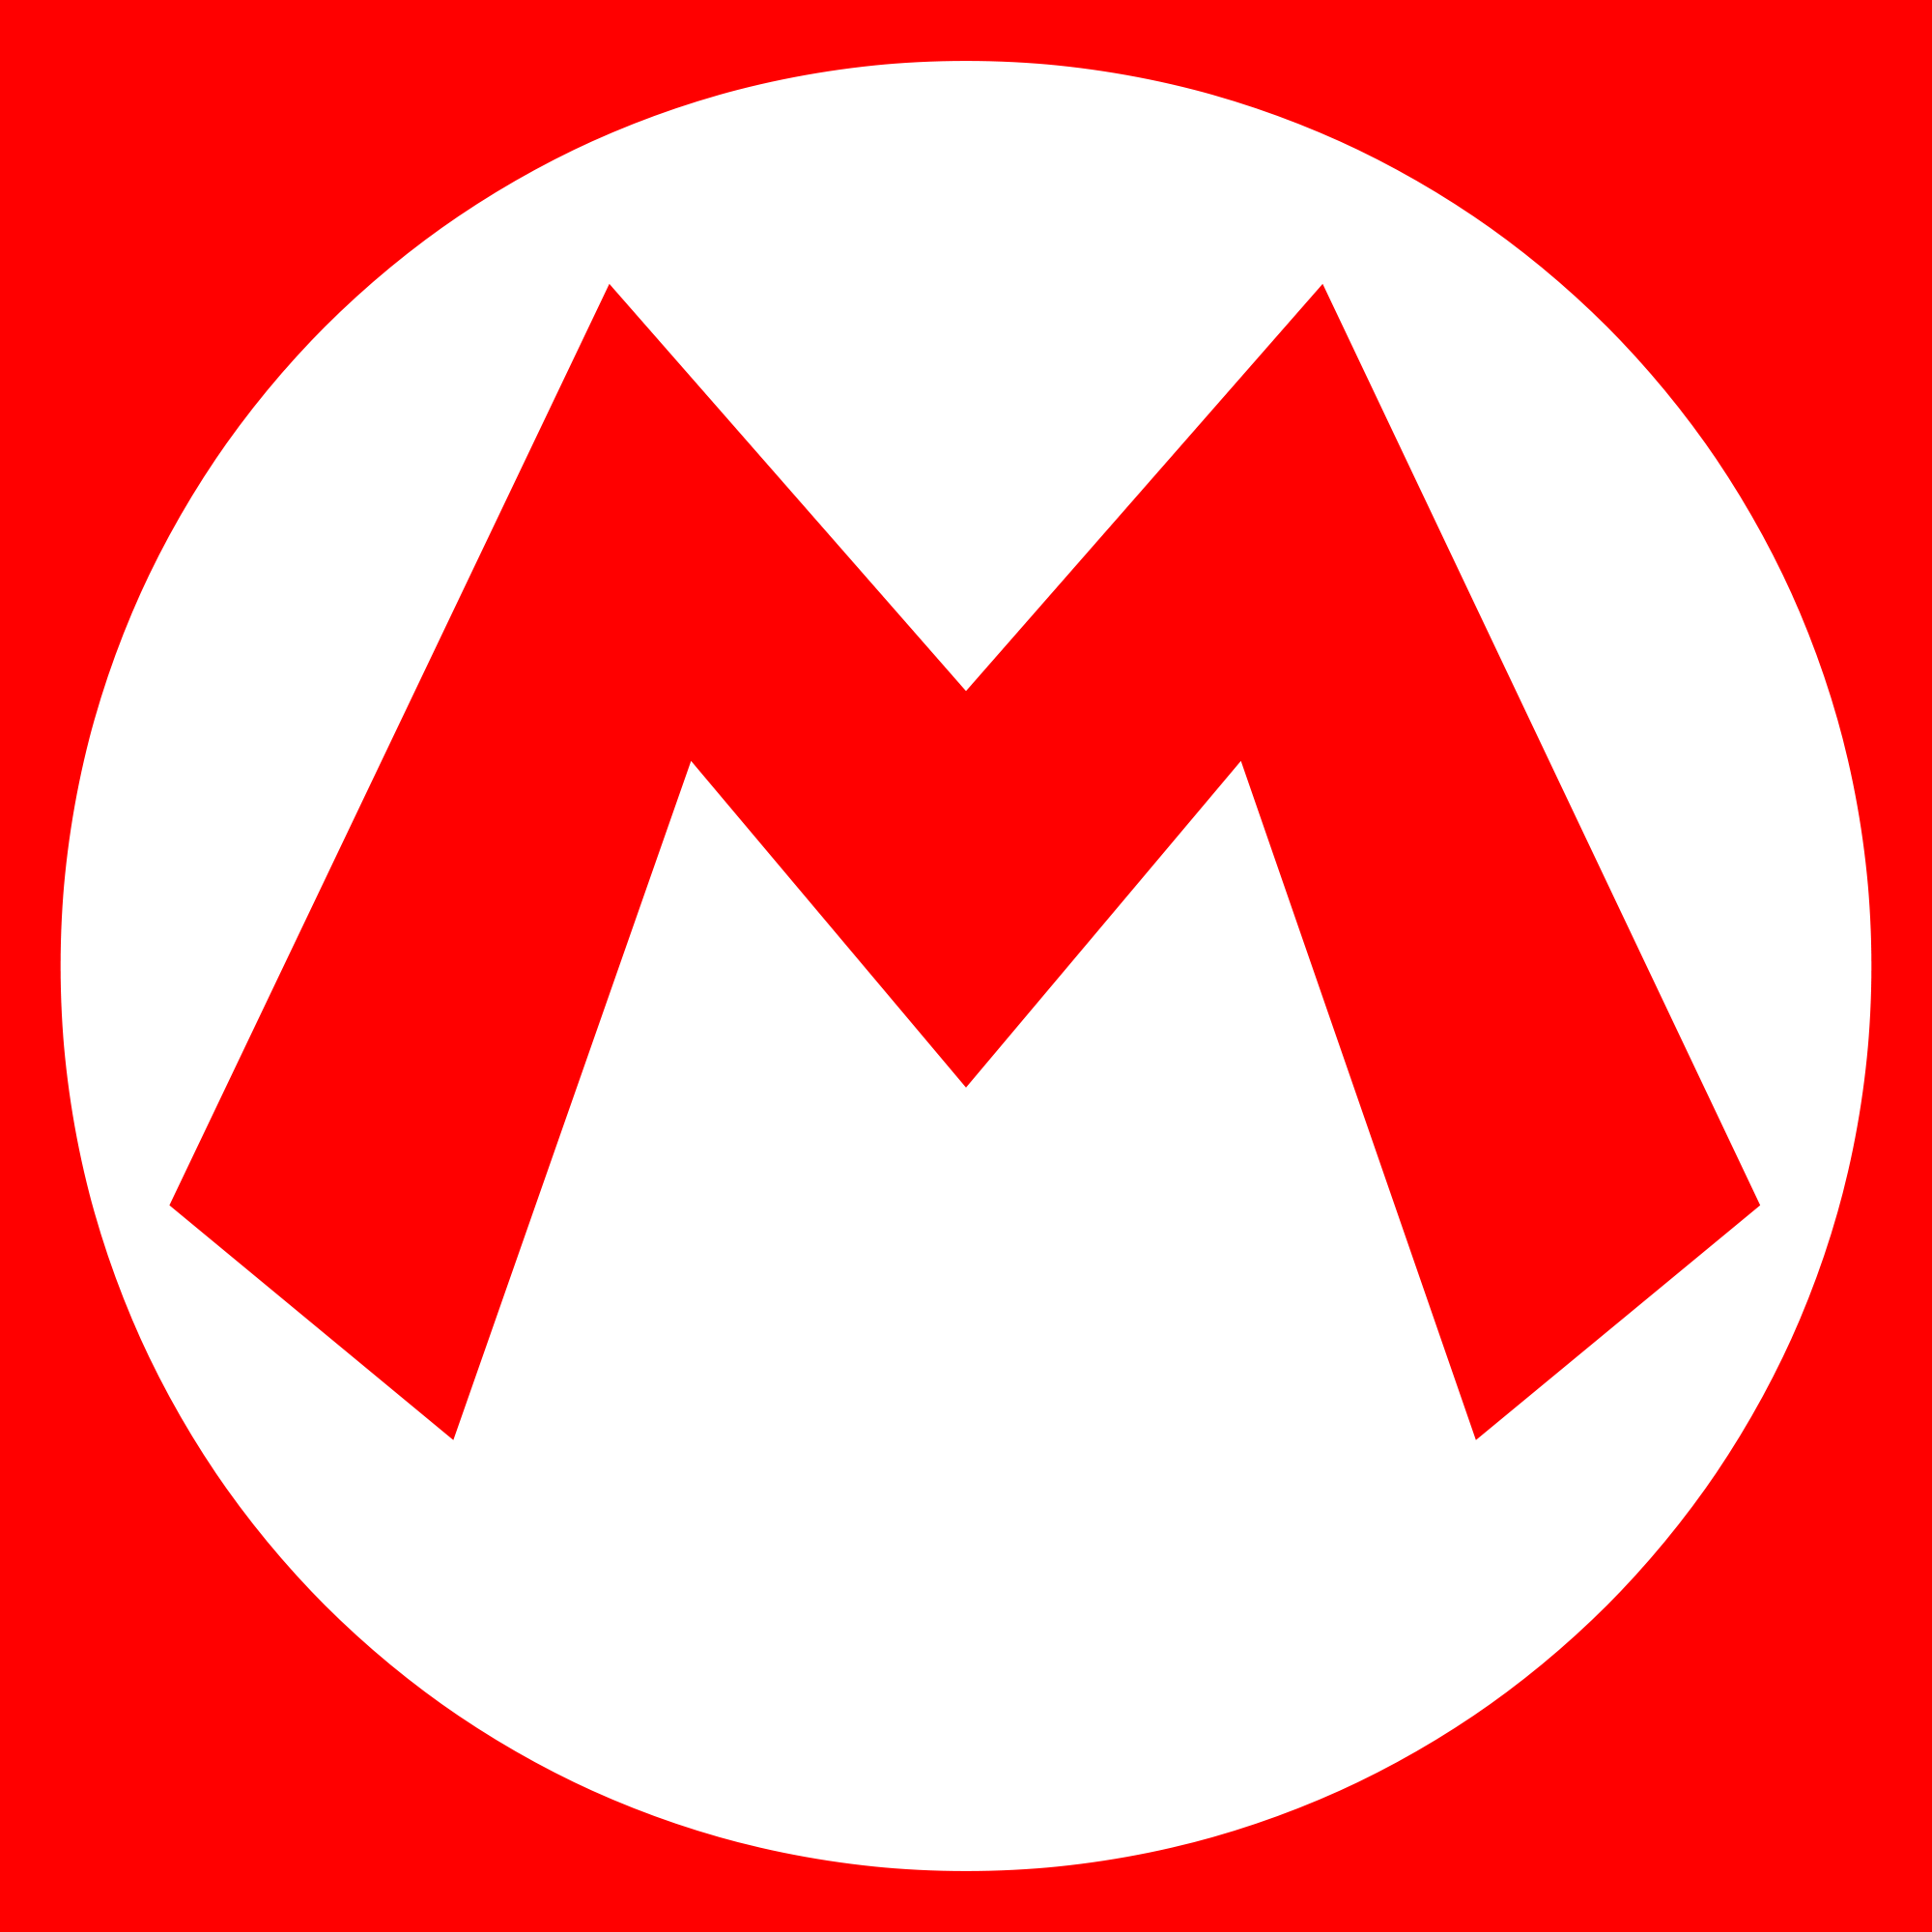 Mario Logo - Mario (franchise)